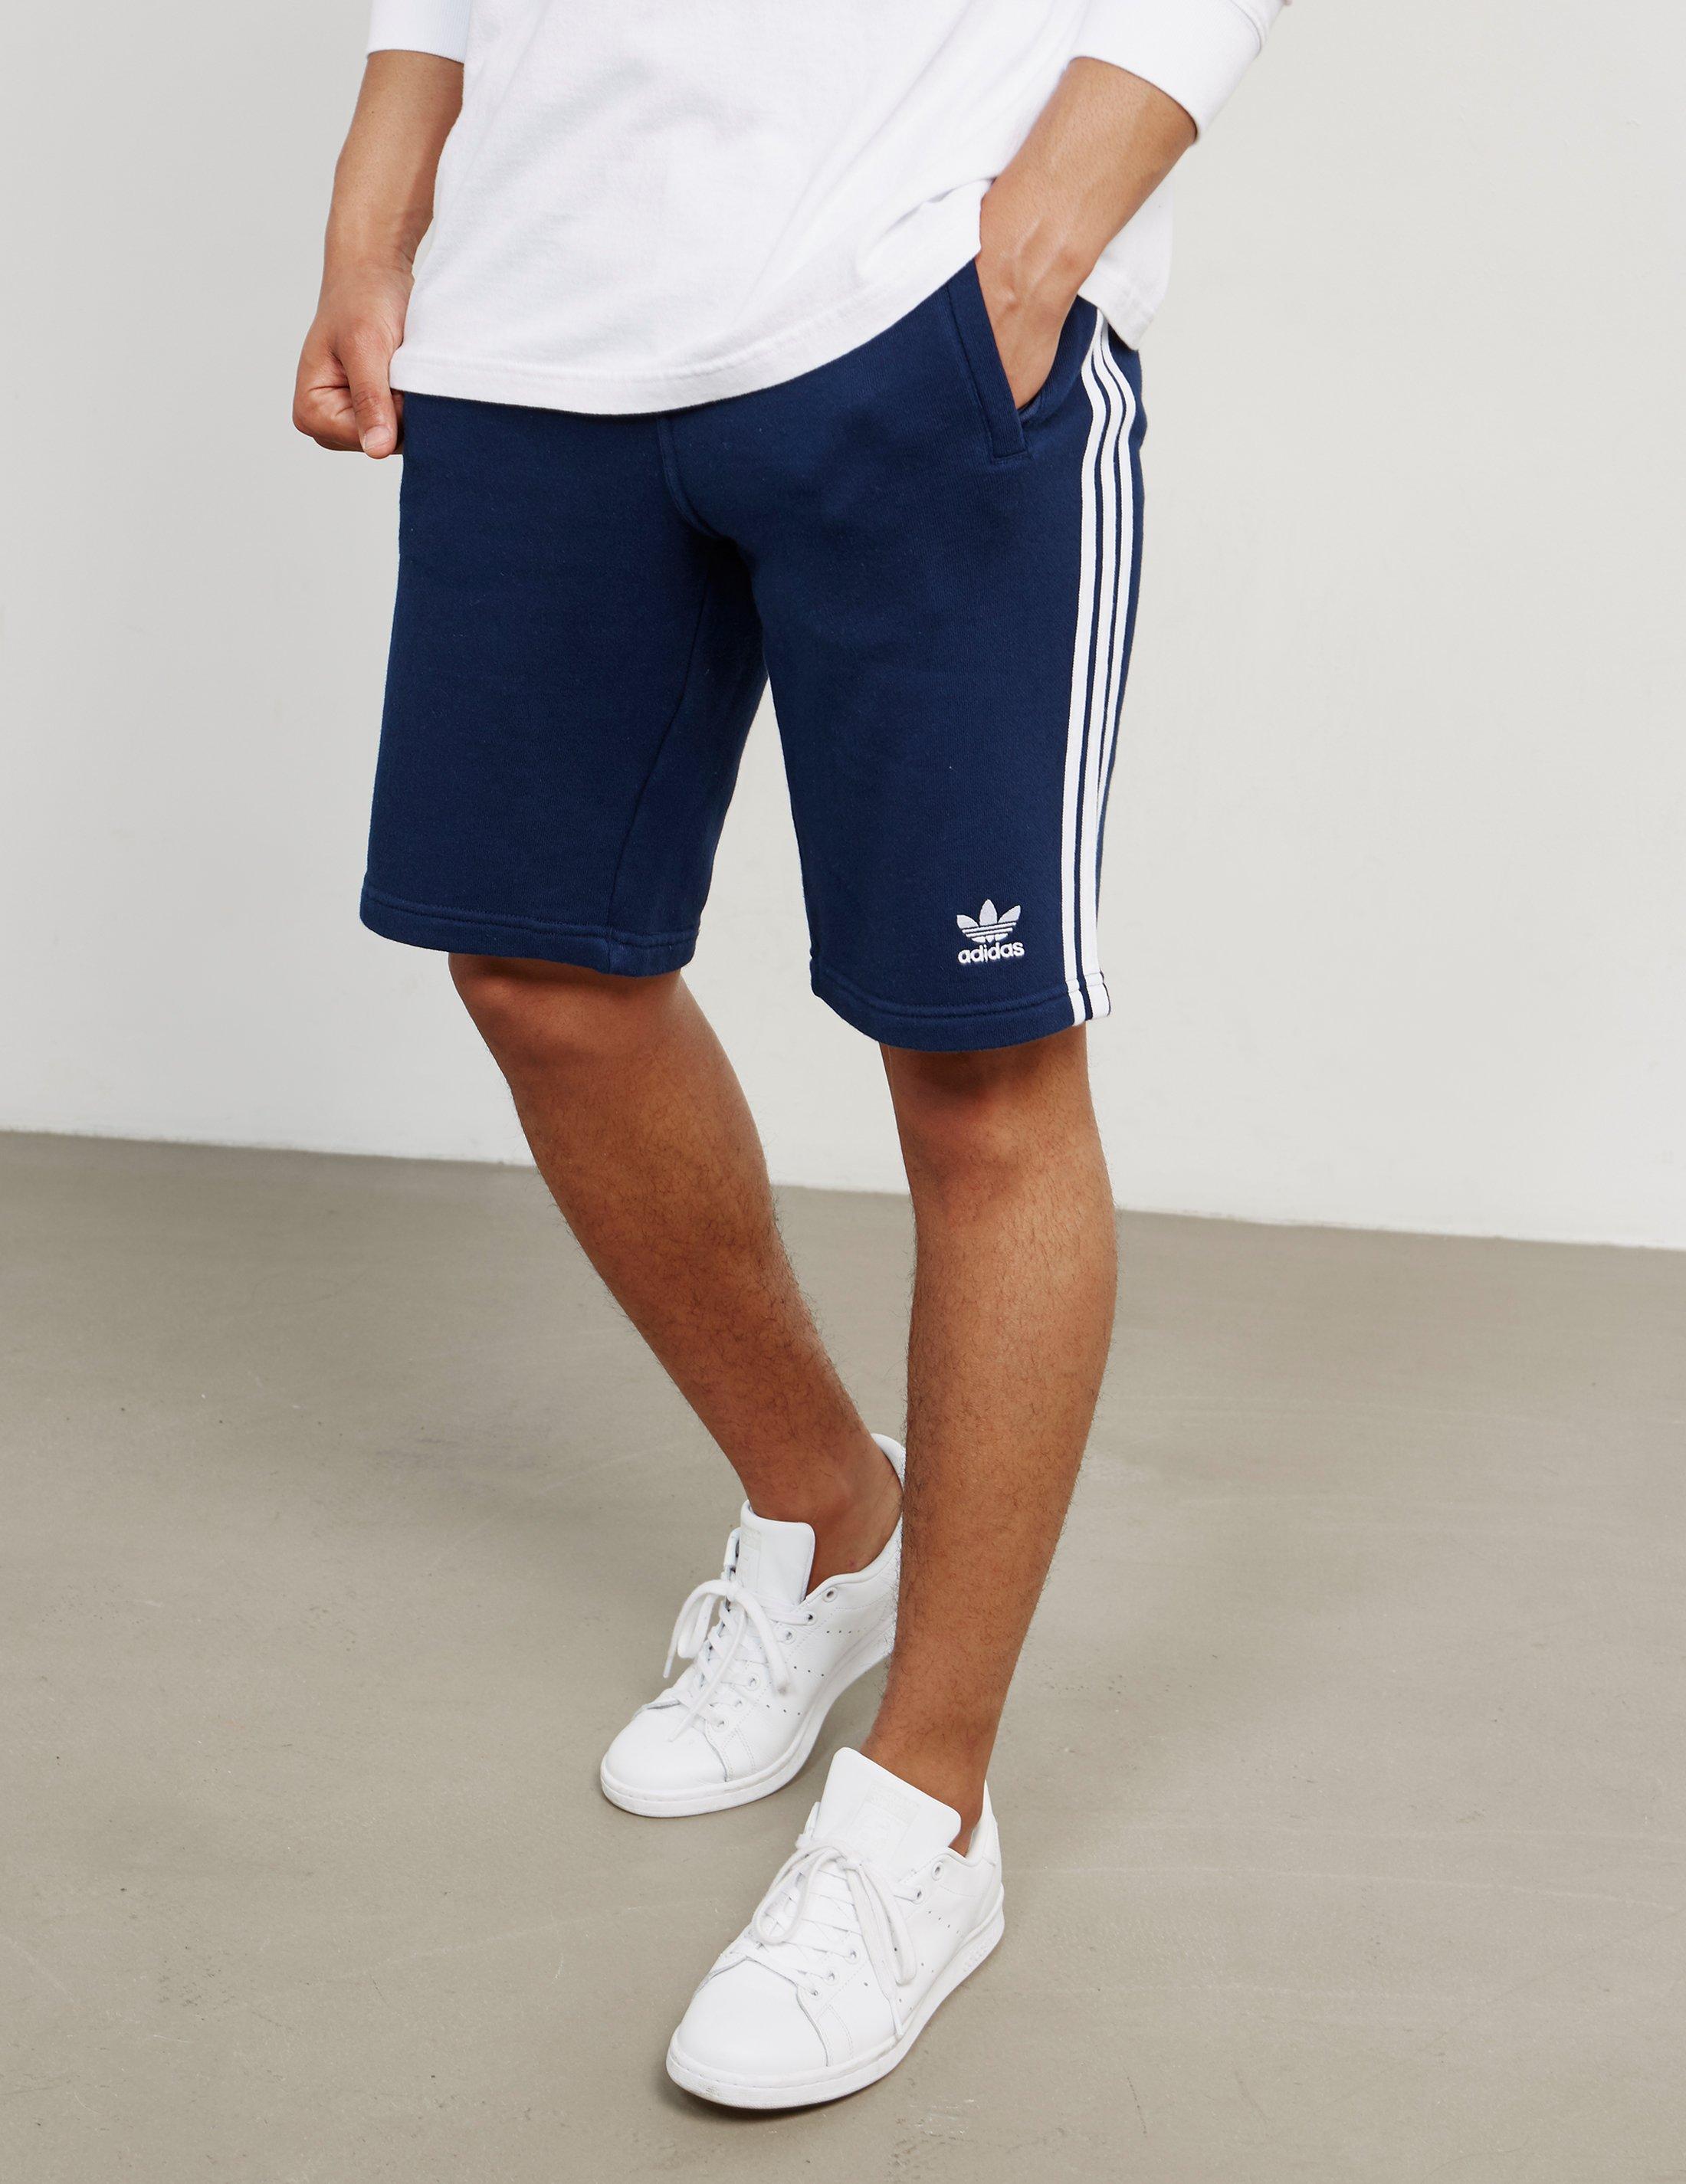 Lyst - adidas Originals Mens 3-stripes Fleece Shorts Navy Blue in Blue ...